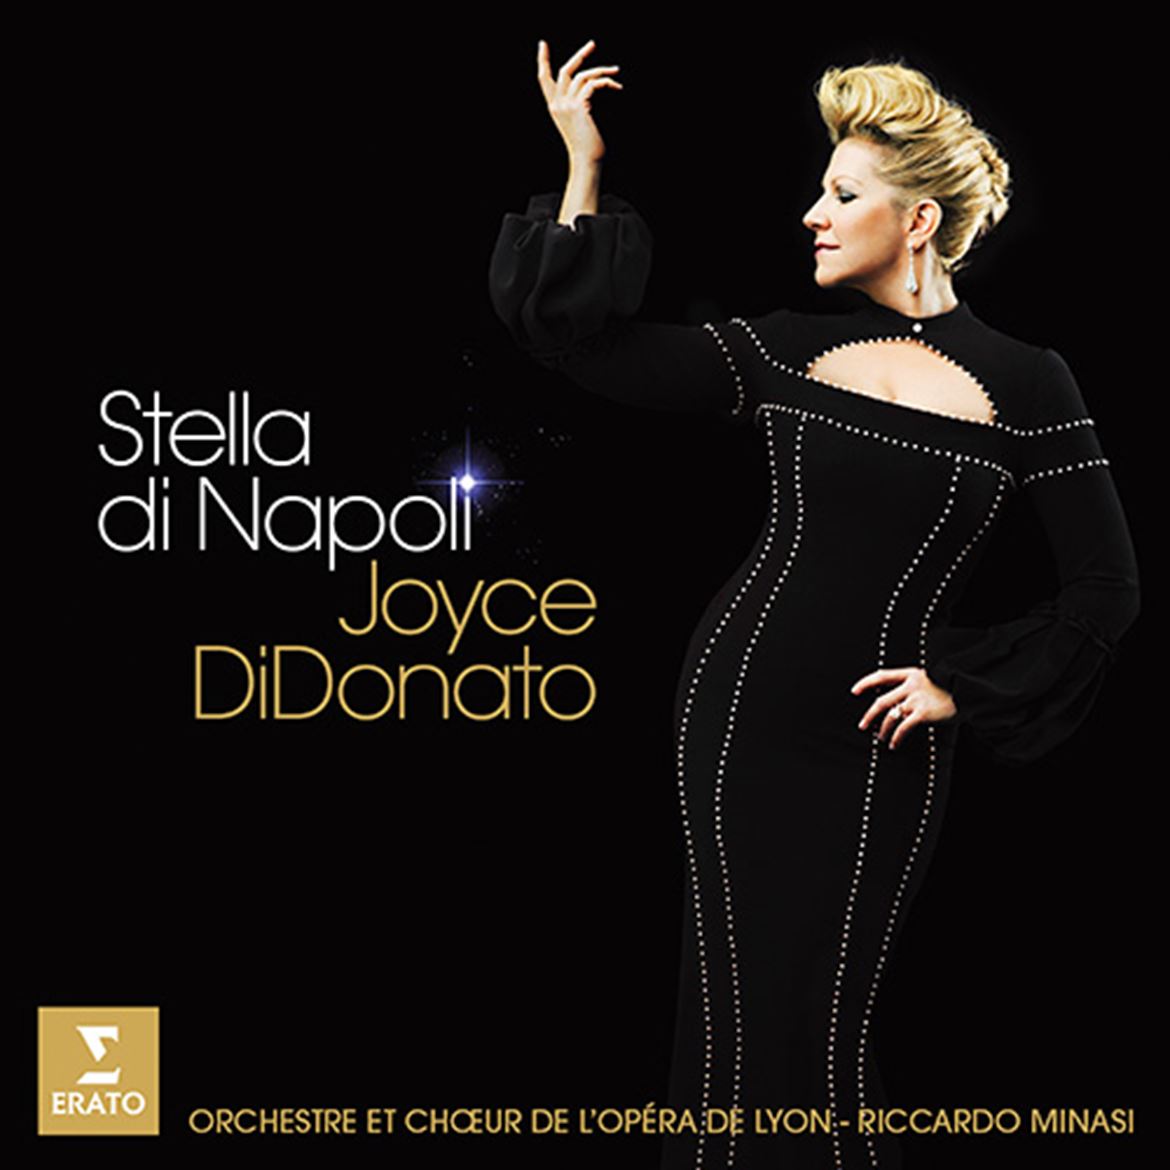 IMACUSTICA - PORTO_Capa do disco Stella di Napoli, de Joyce DiDonato